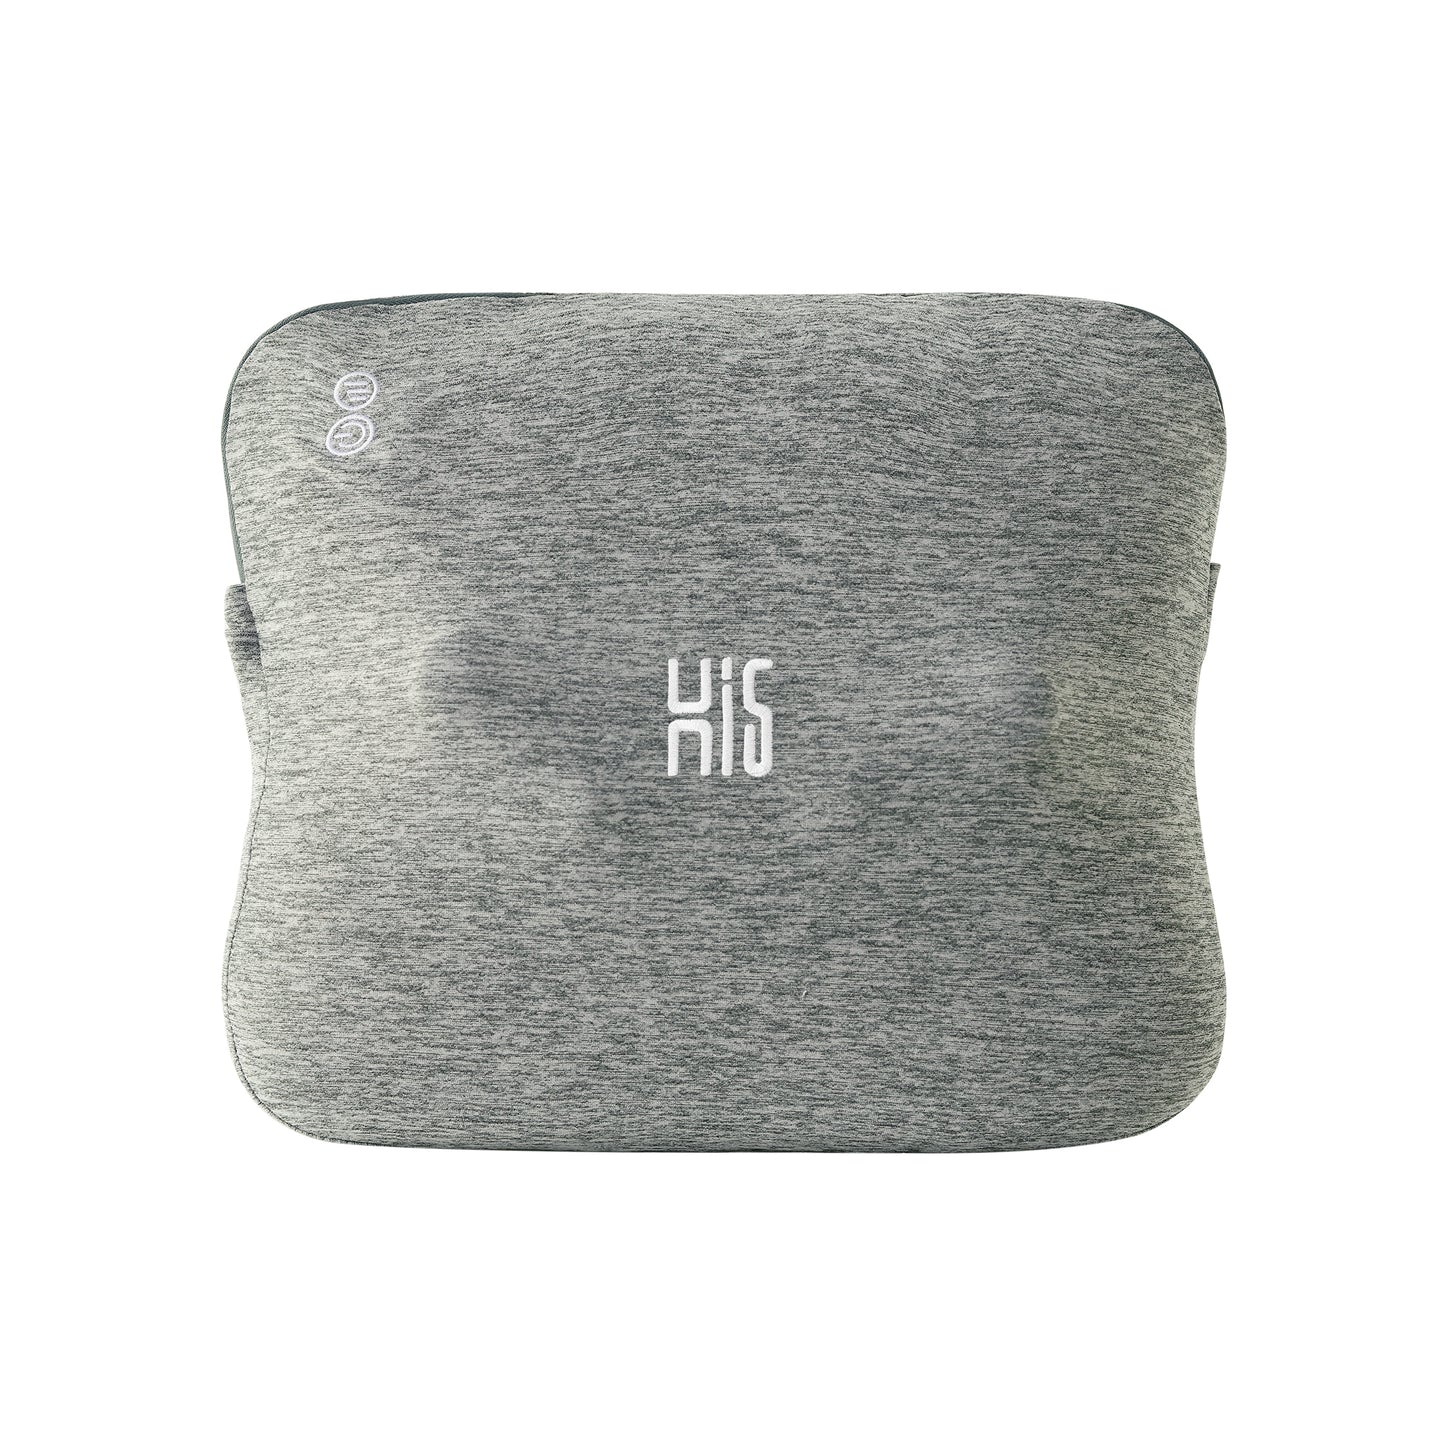 Hi5 Bravo Shiatsu-Massagekissen mit Wärmefunktion, Abschaltautomatik, waschbarer Bezug für Schultern, Nacken, Rücken und Beine